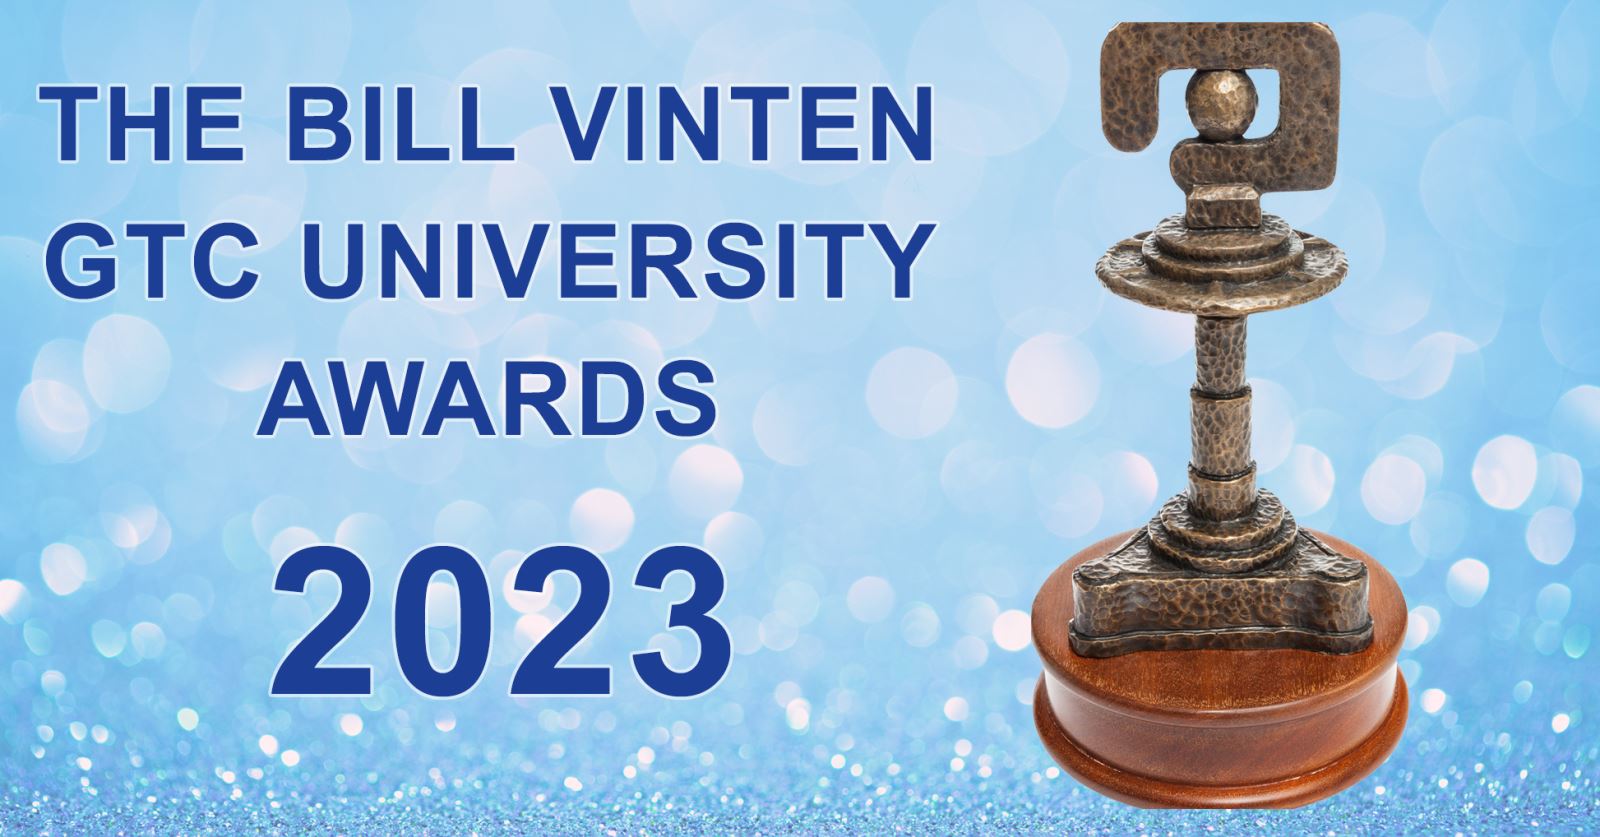 Bill Vinten GTC University Awards 2023